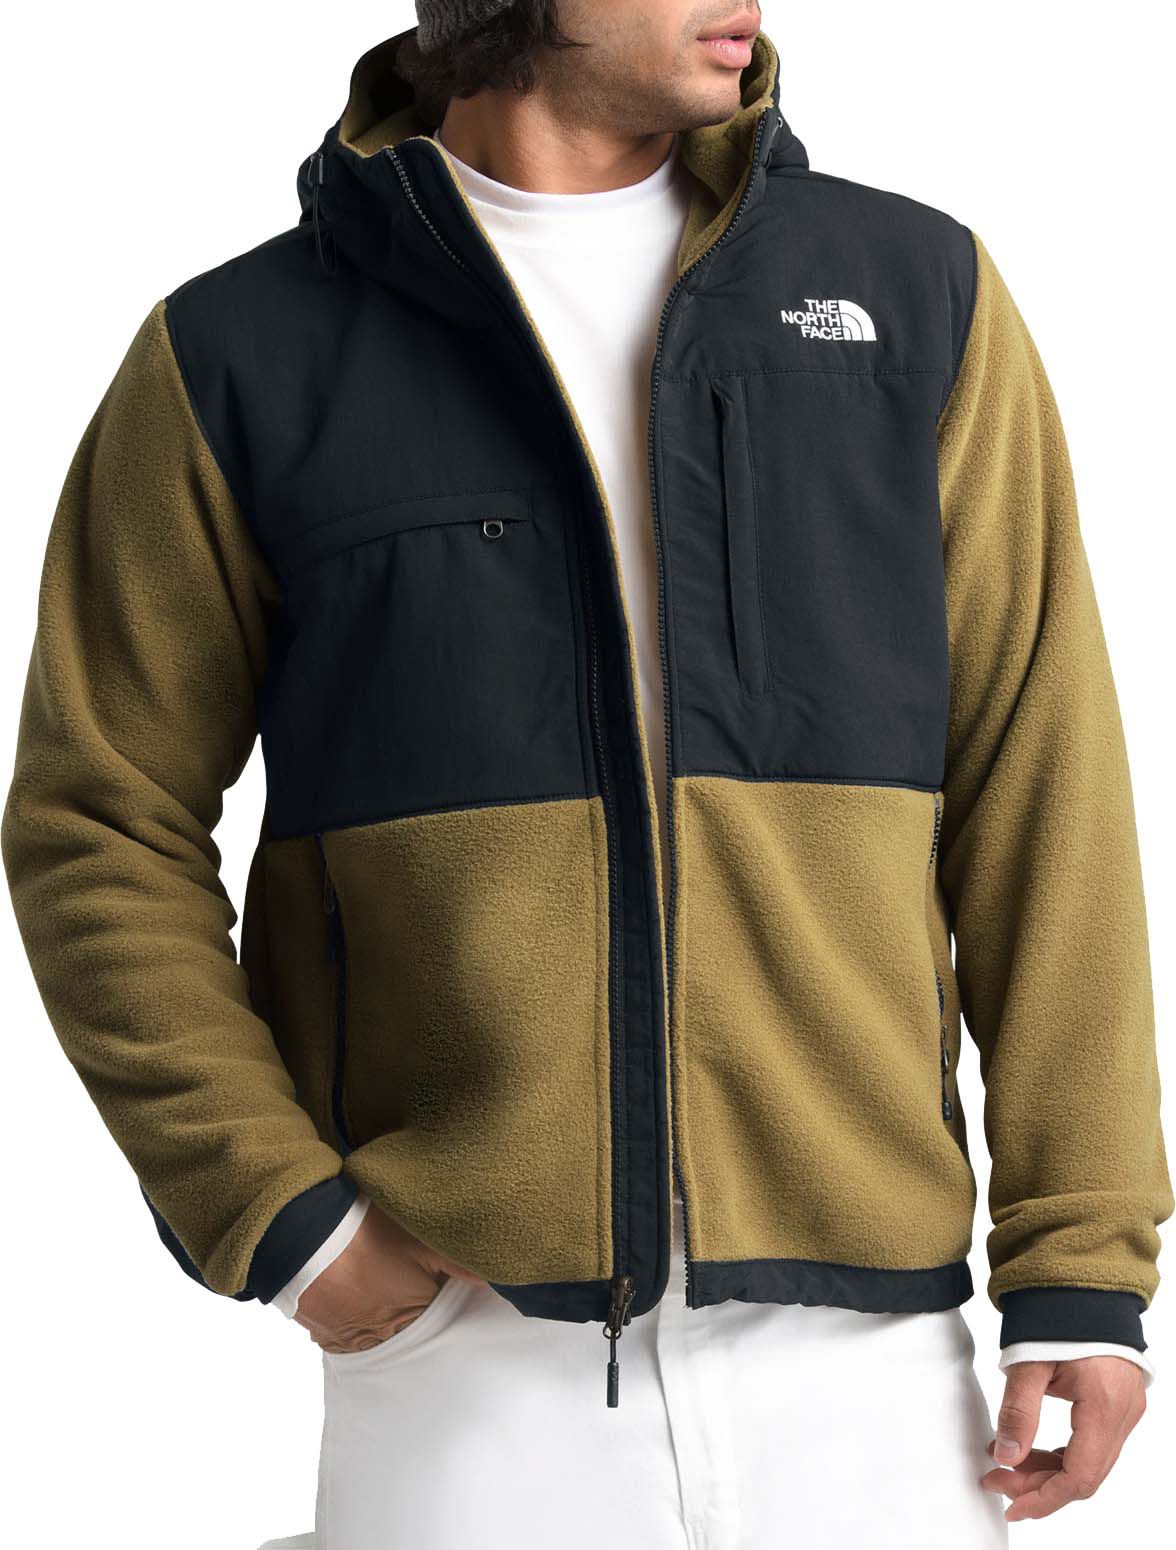 denali 2 hooded fleece jacket 